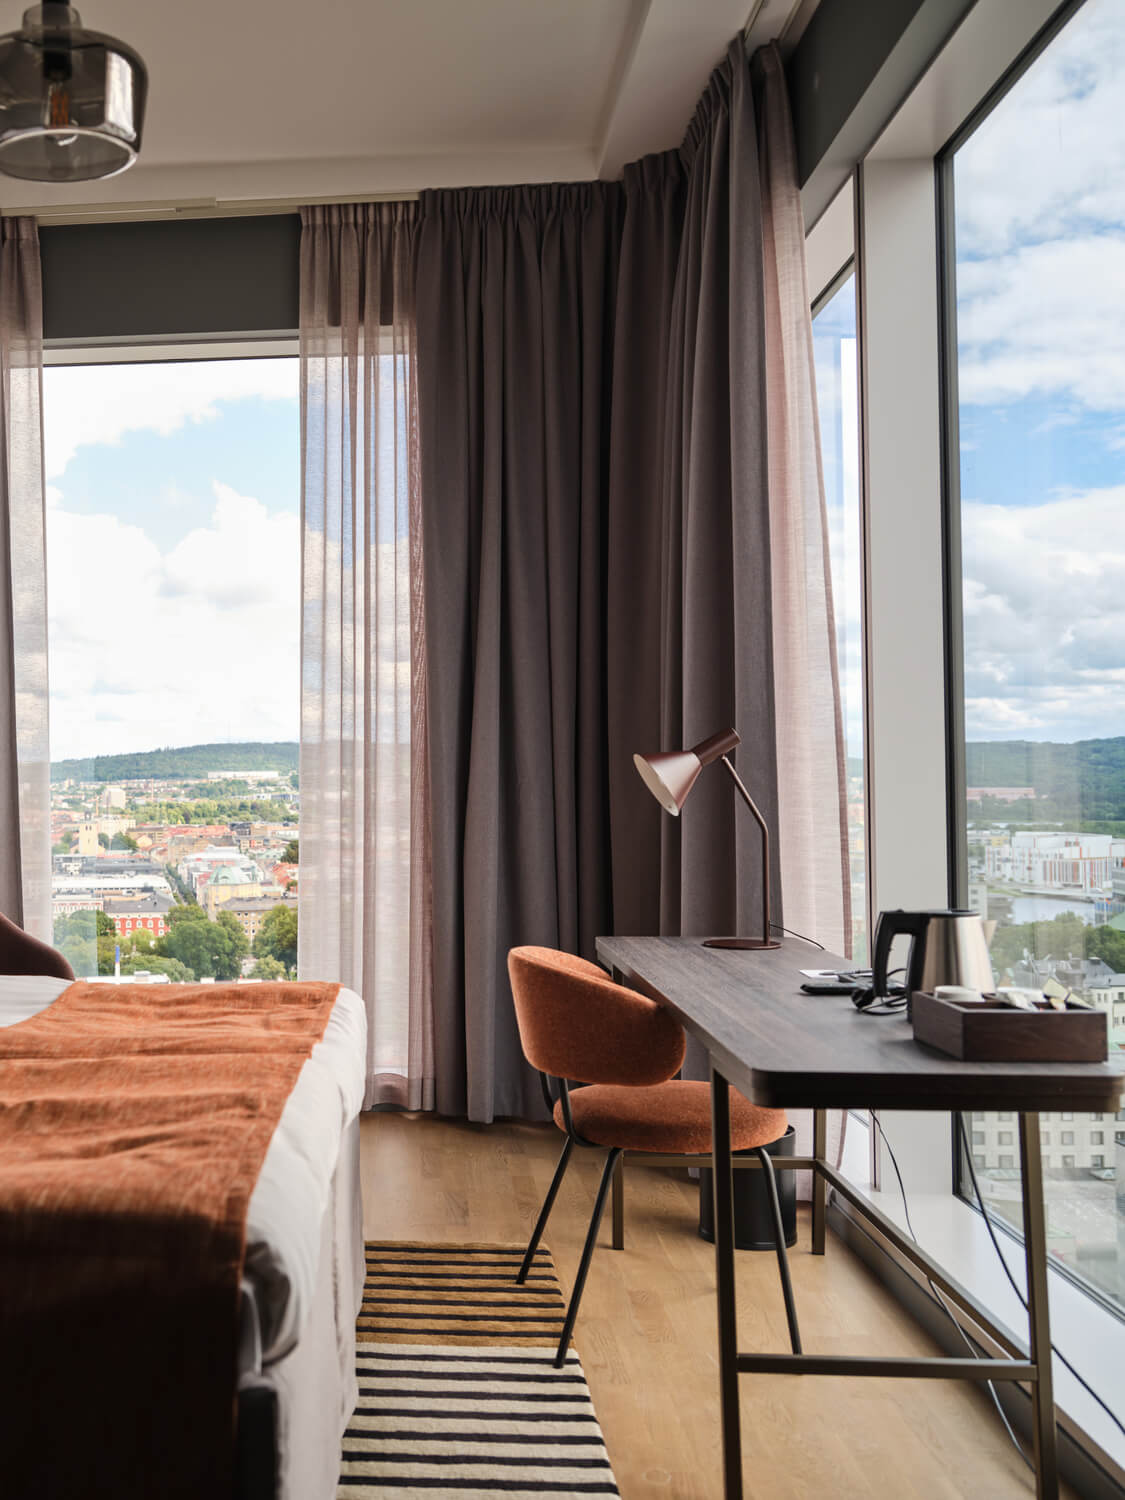 Modernt hotellrum med utsikt på Quality Hotel Match i Jönköping.